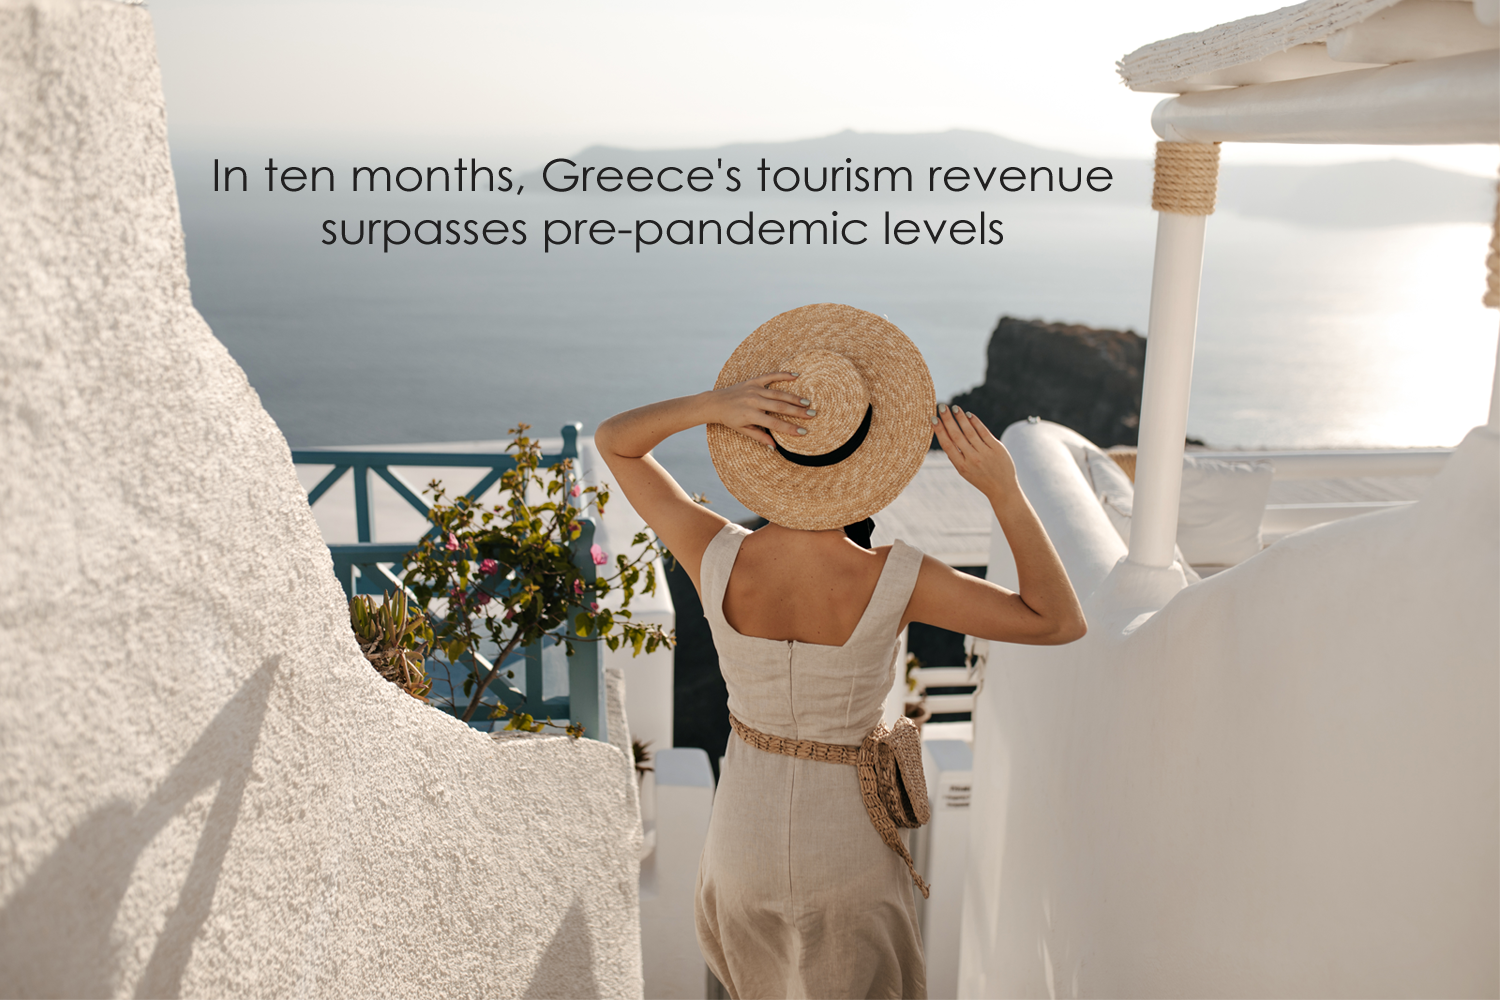 In ten months, Greece's tourism revenue surpasses pre-pandemic levels.